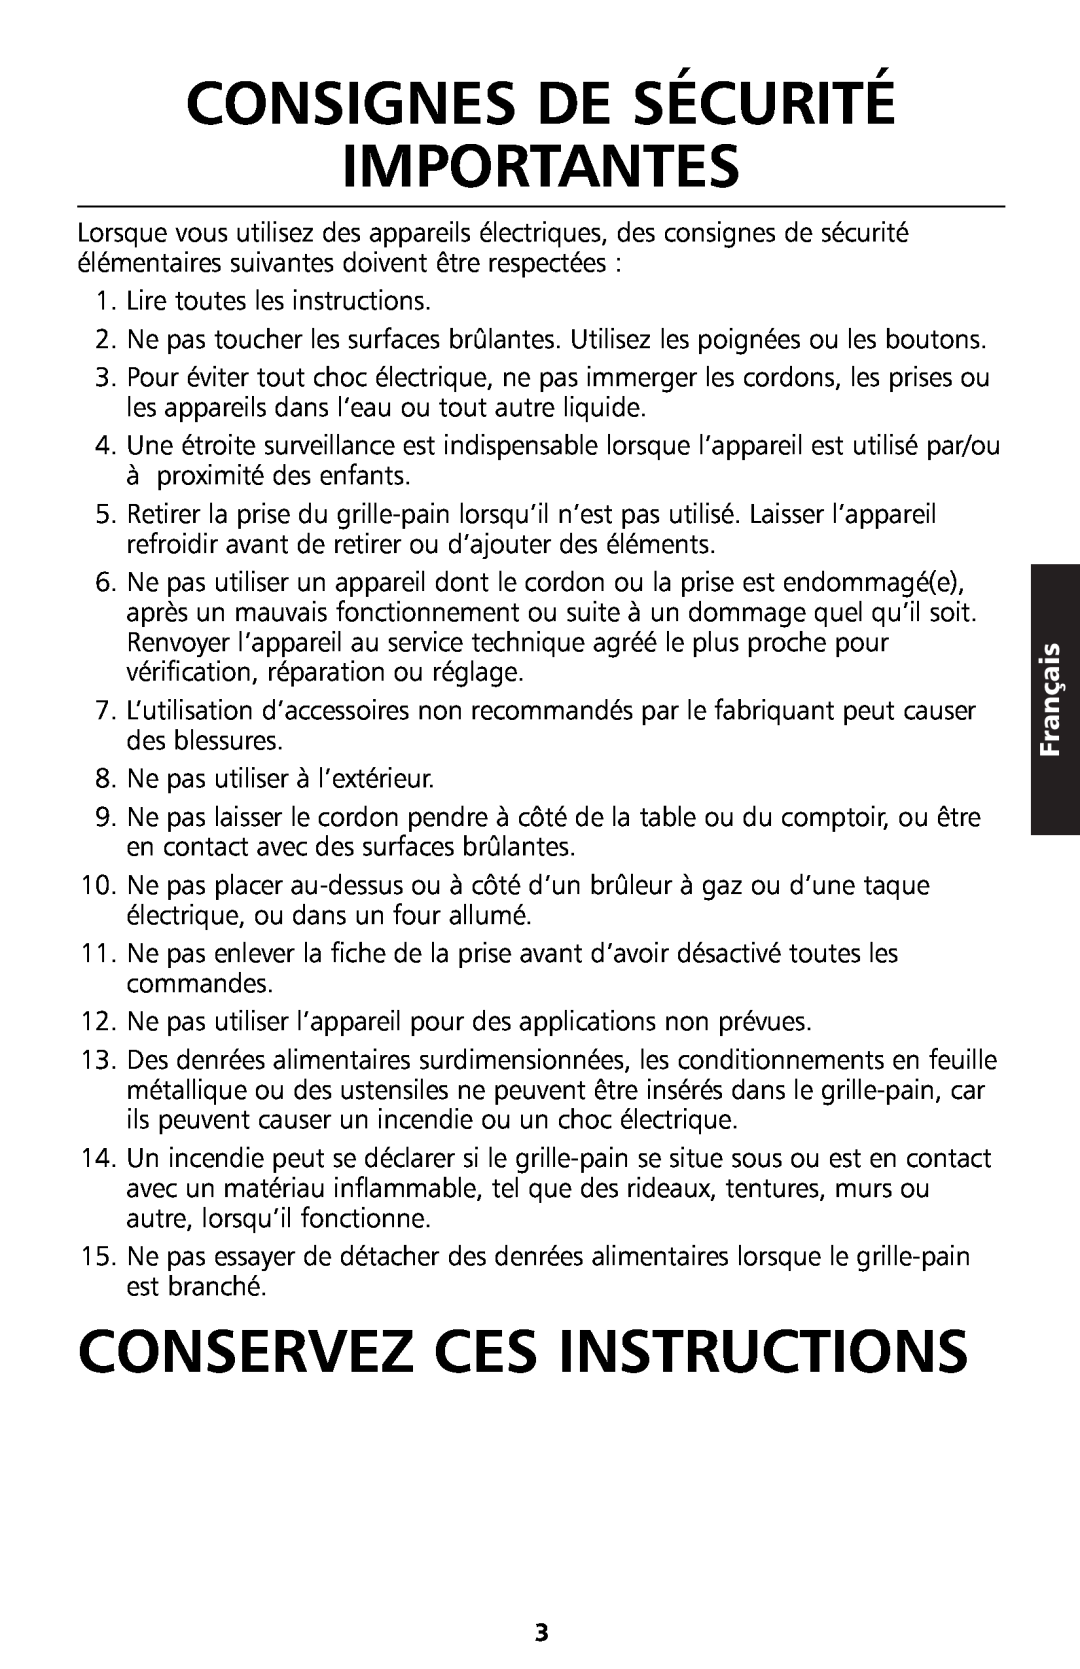 KitchenAid 5KTT890 manual Consignes De Sécurité Importantes, Conservez Ces Instructions, Français 